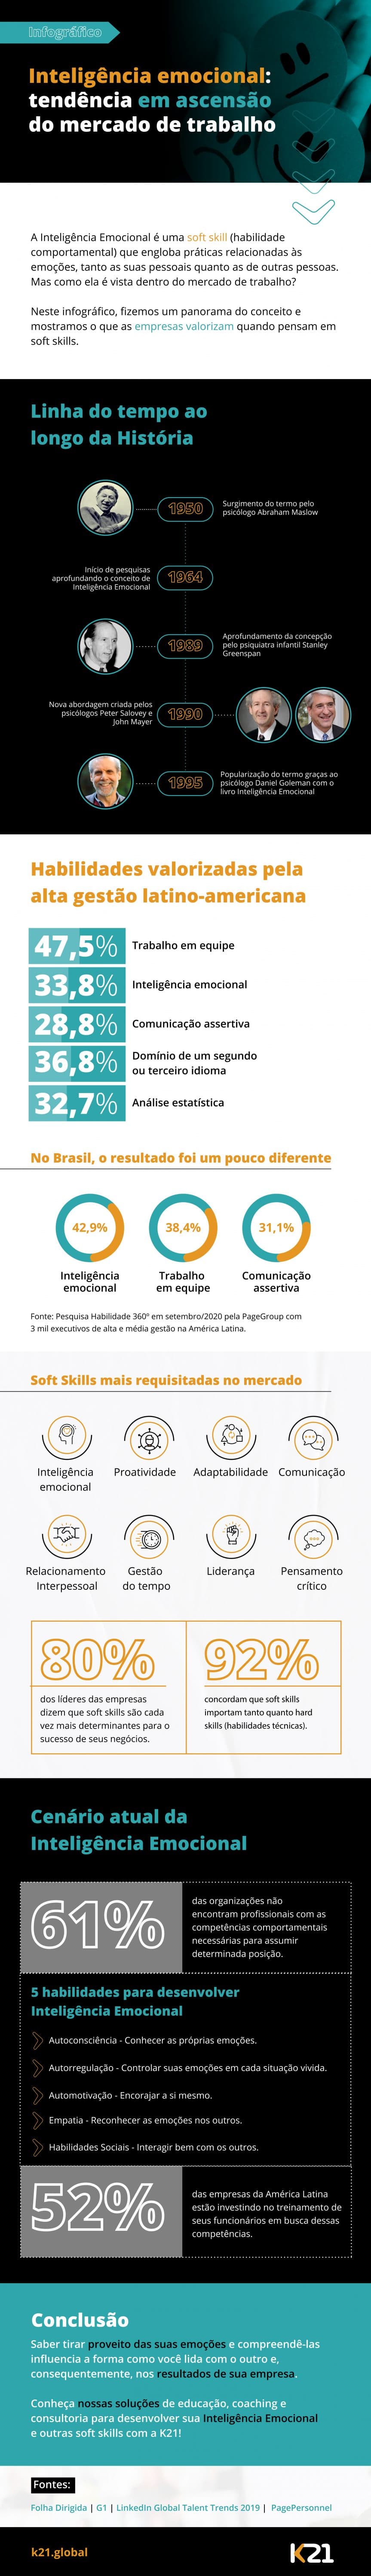 Infográfico: Inteligência Emocional, tendência em ascensão do mercado de trabalho